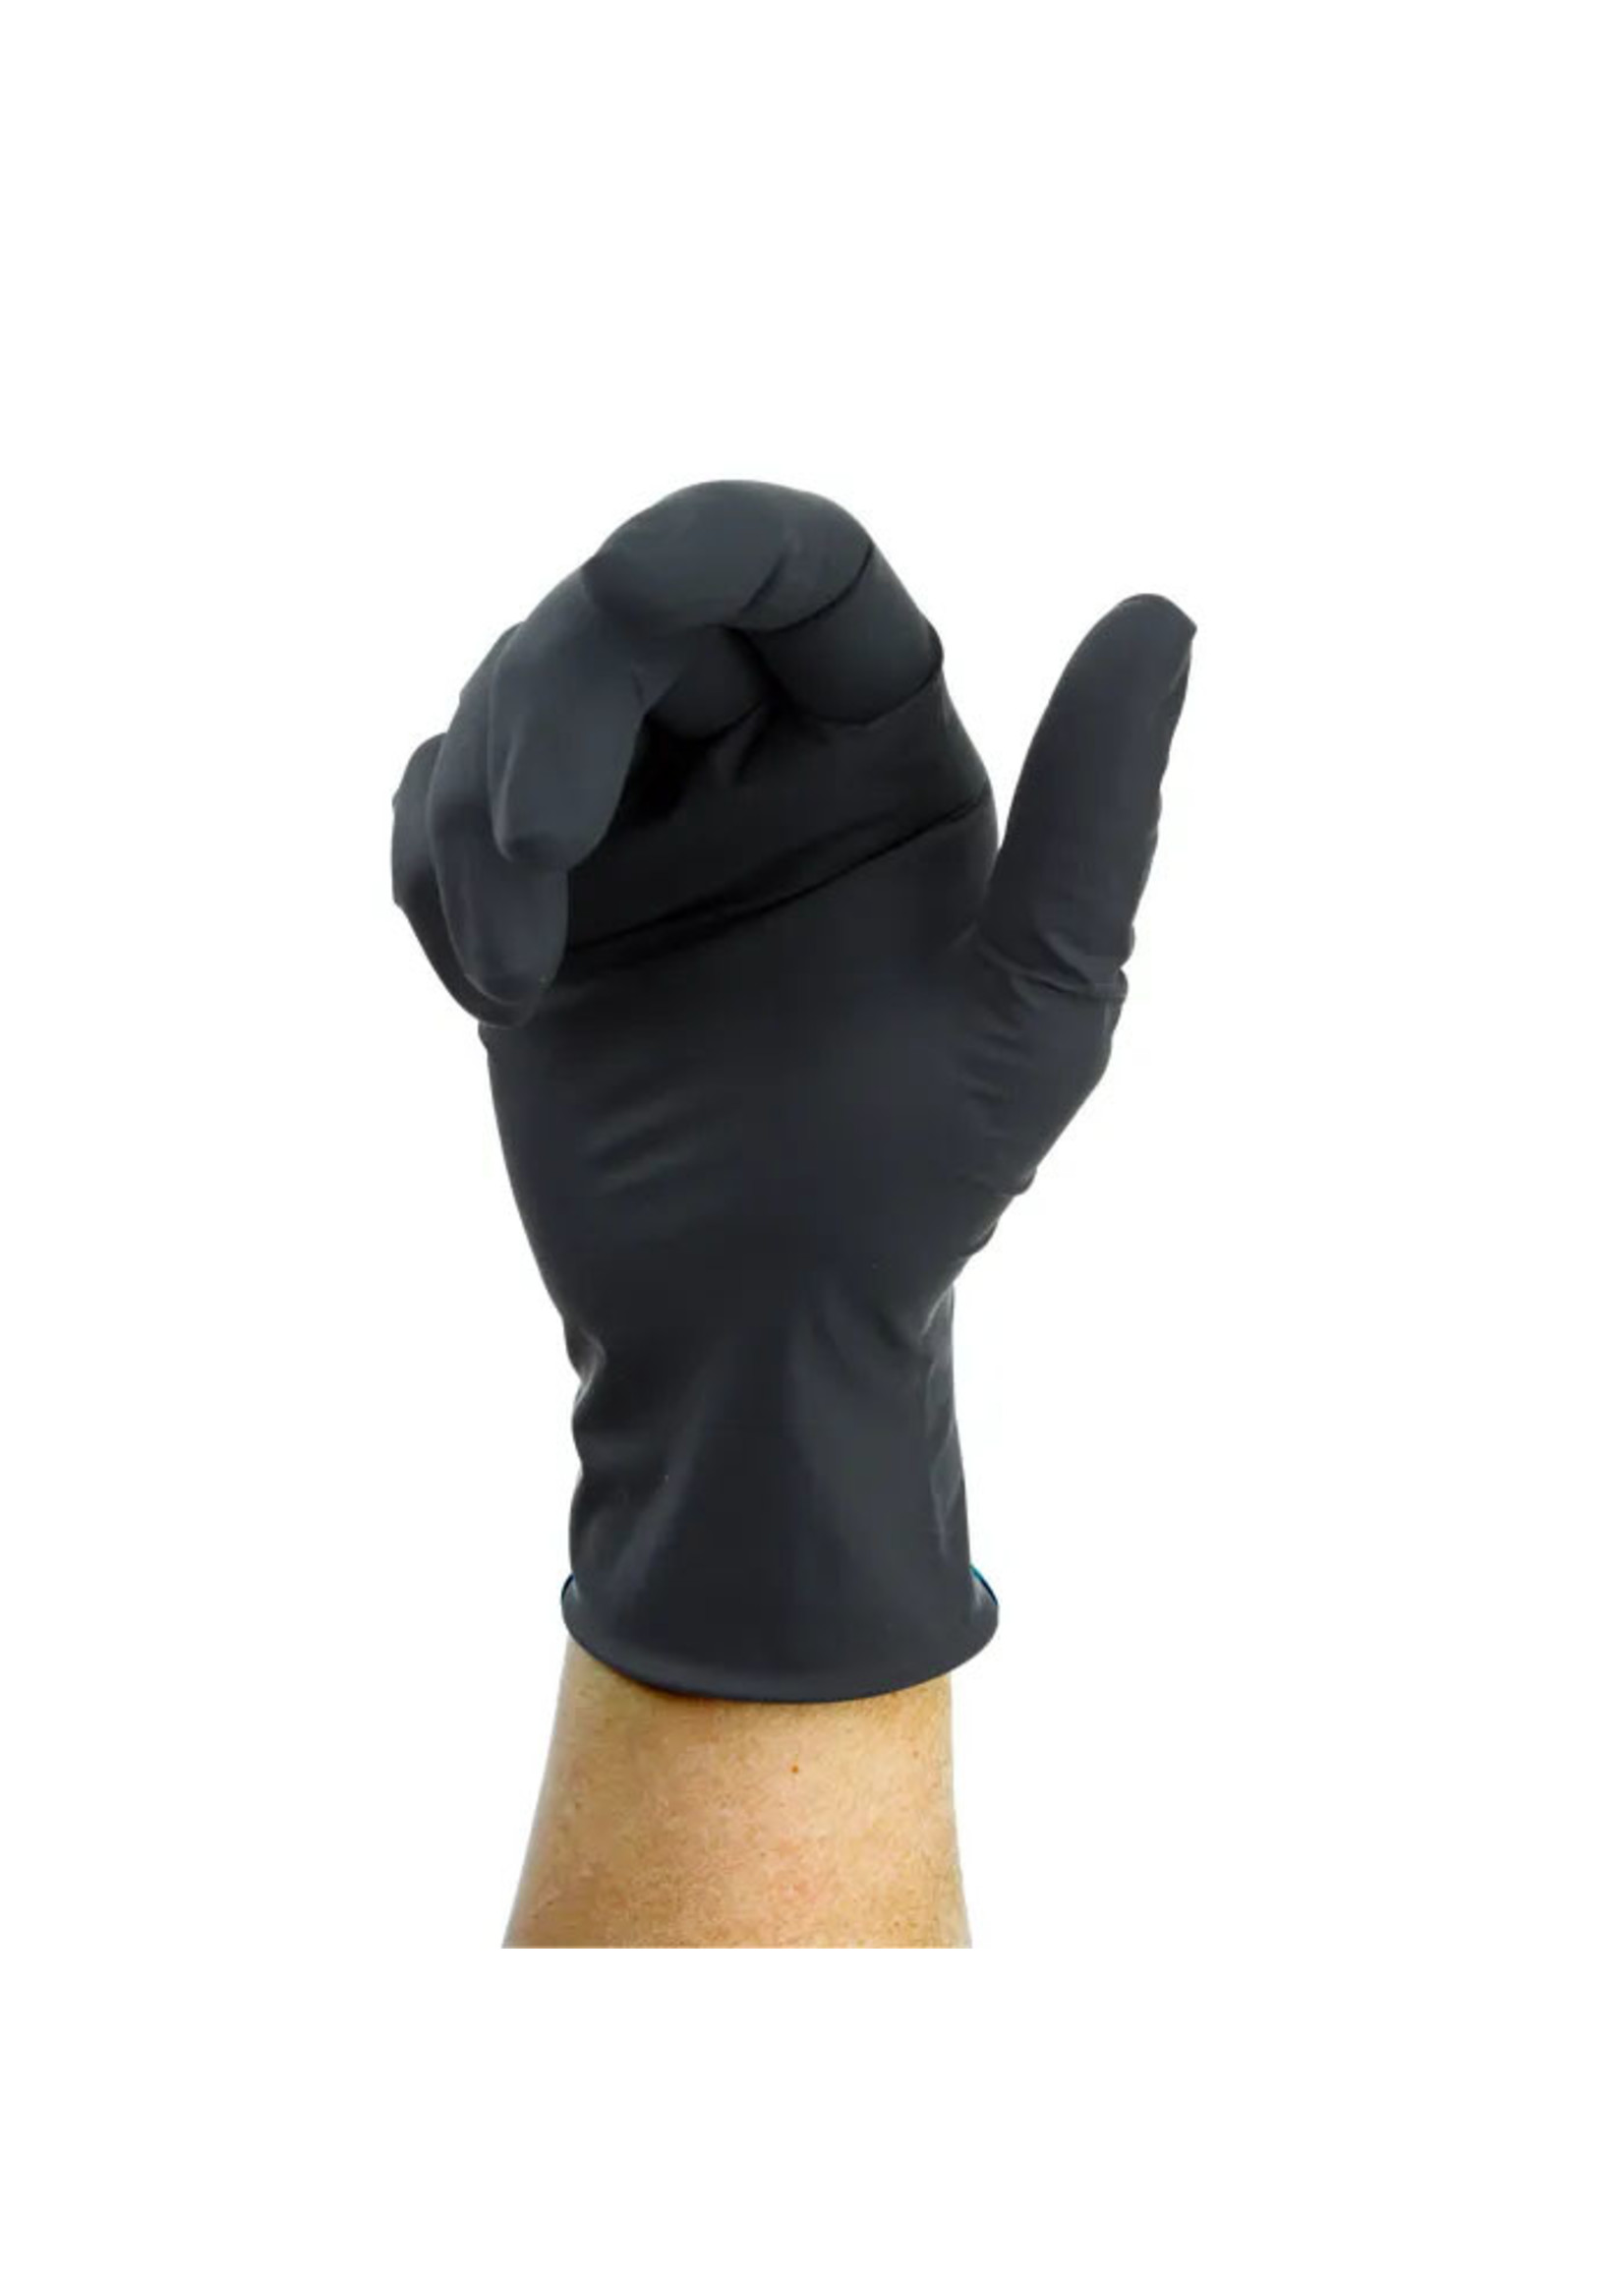 Dynarex Black Arrow Latex Exam Gloves, Powder-Free (XLARGE)